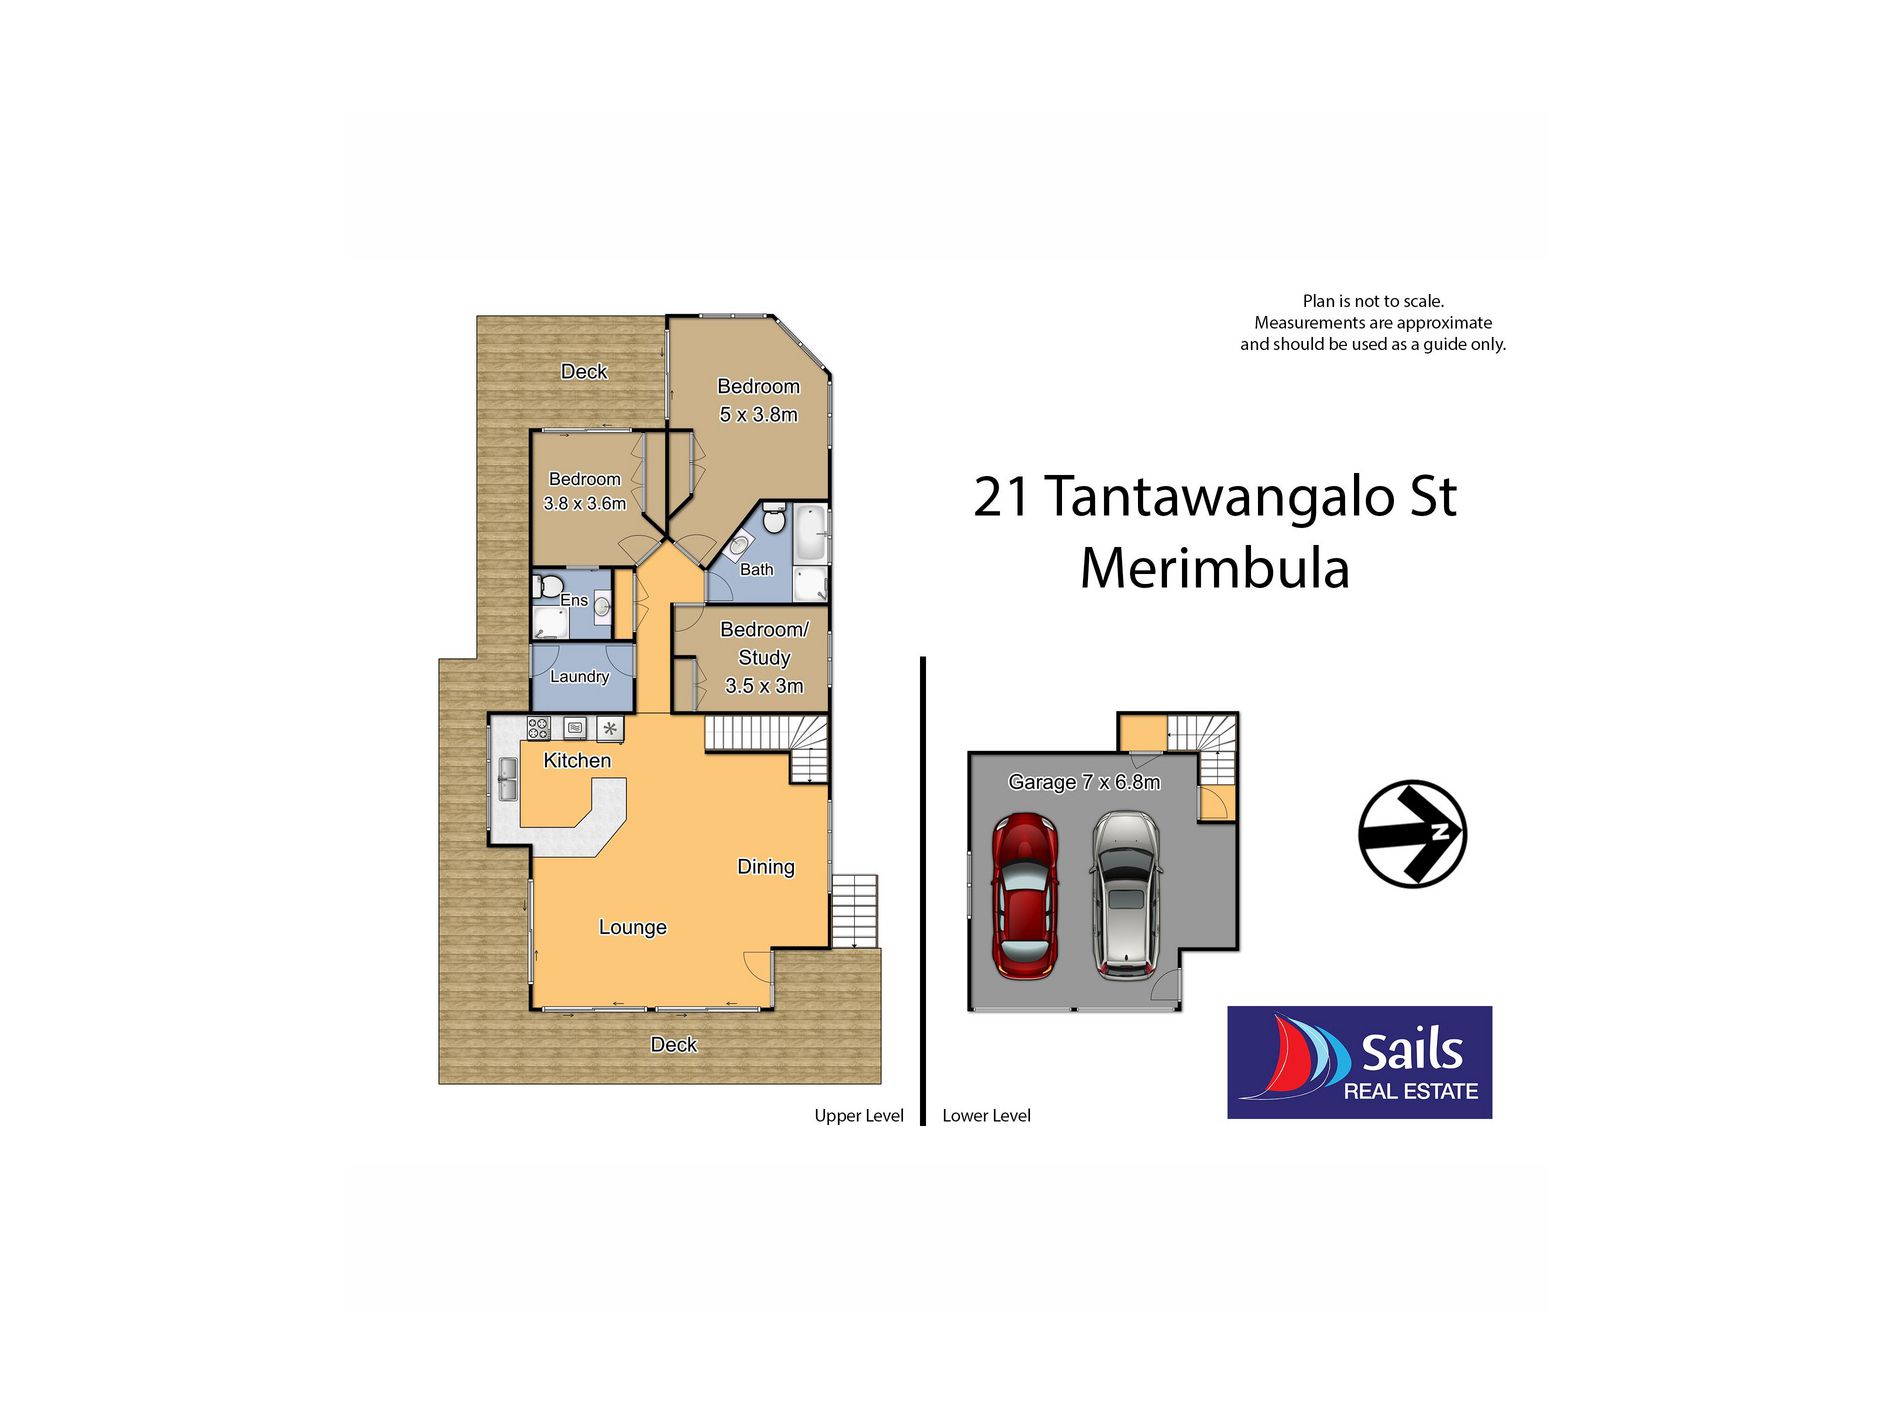 21 Tantawangalo Street, Merimbula